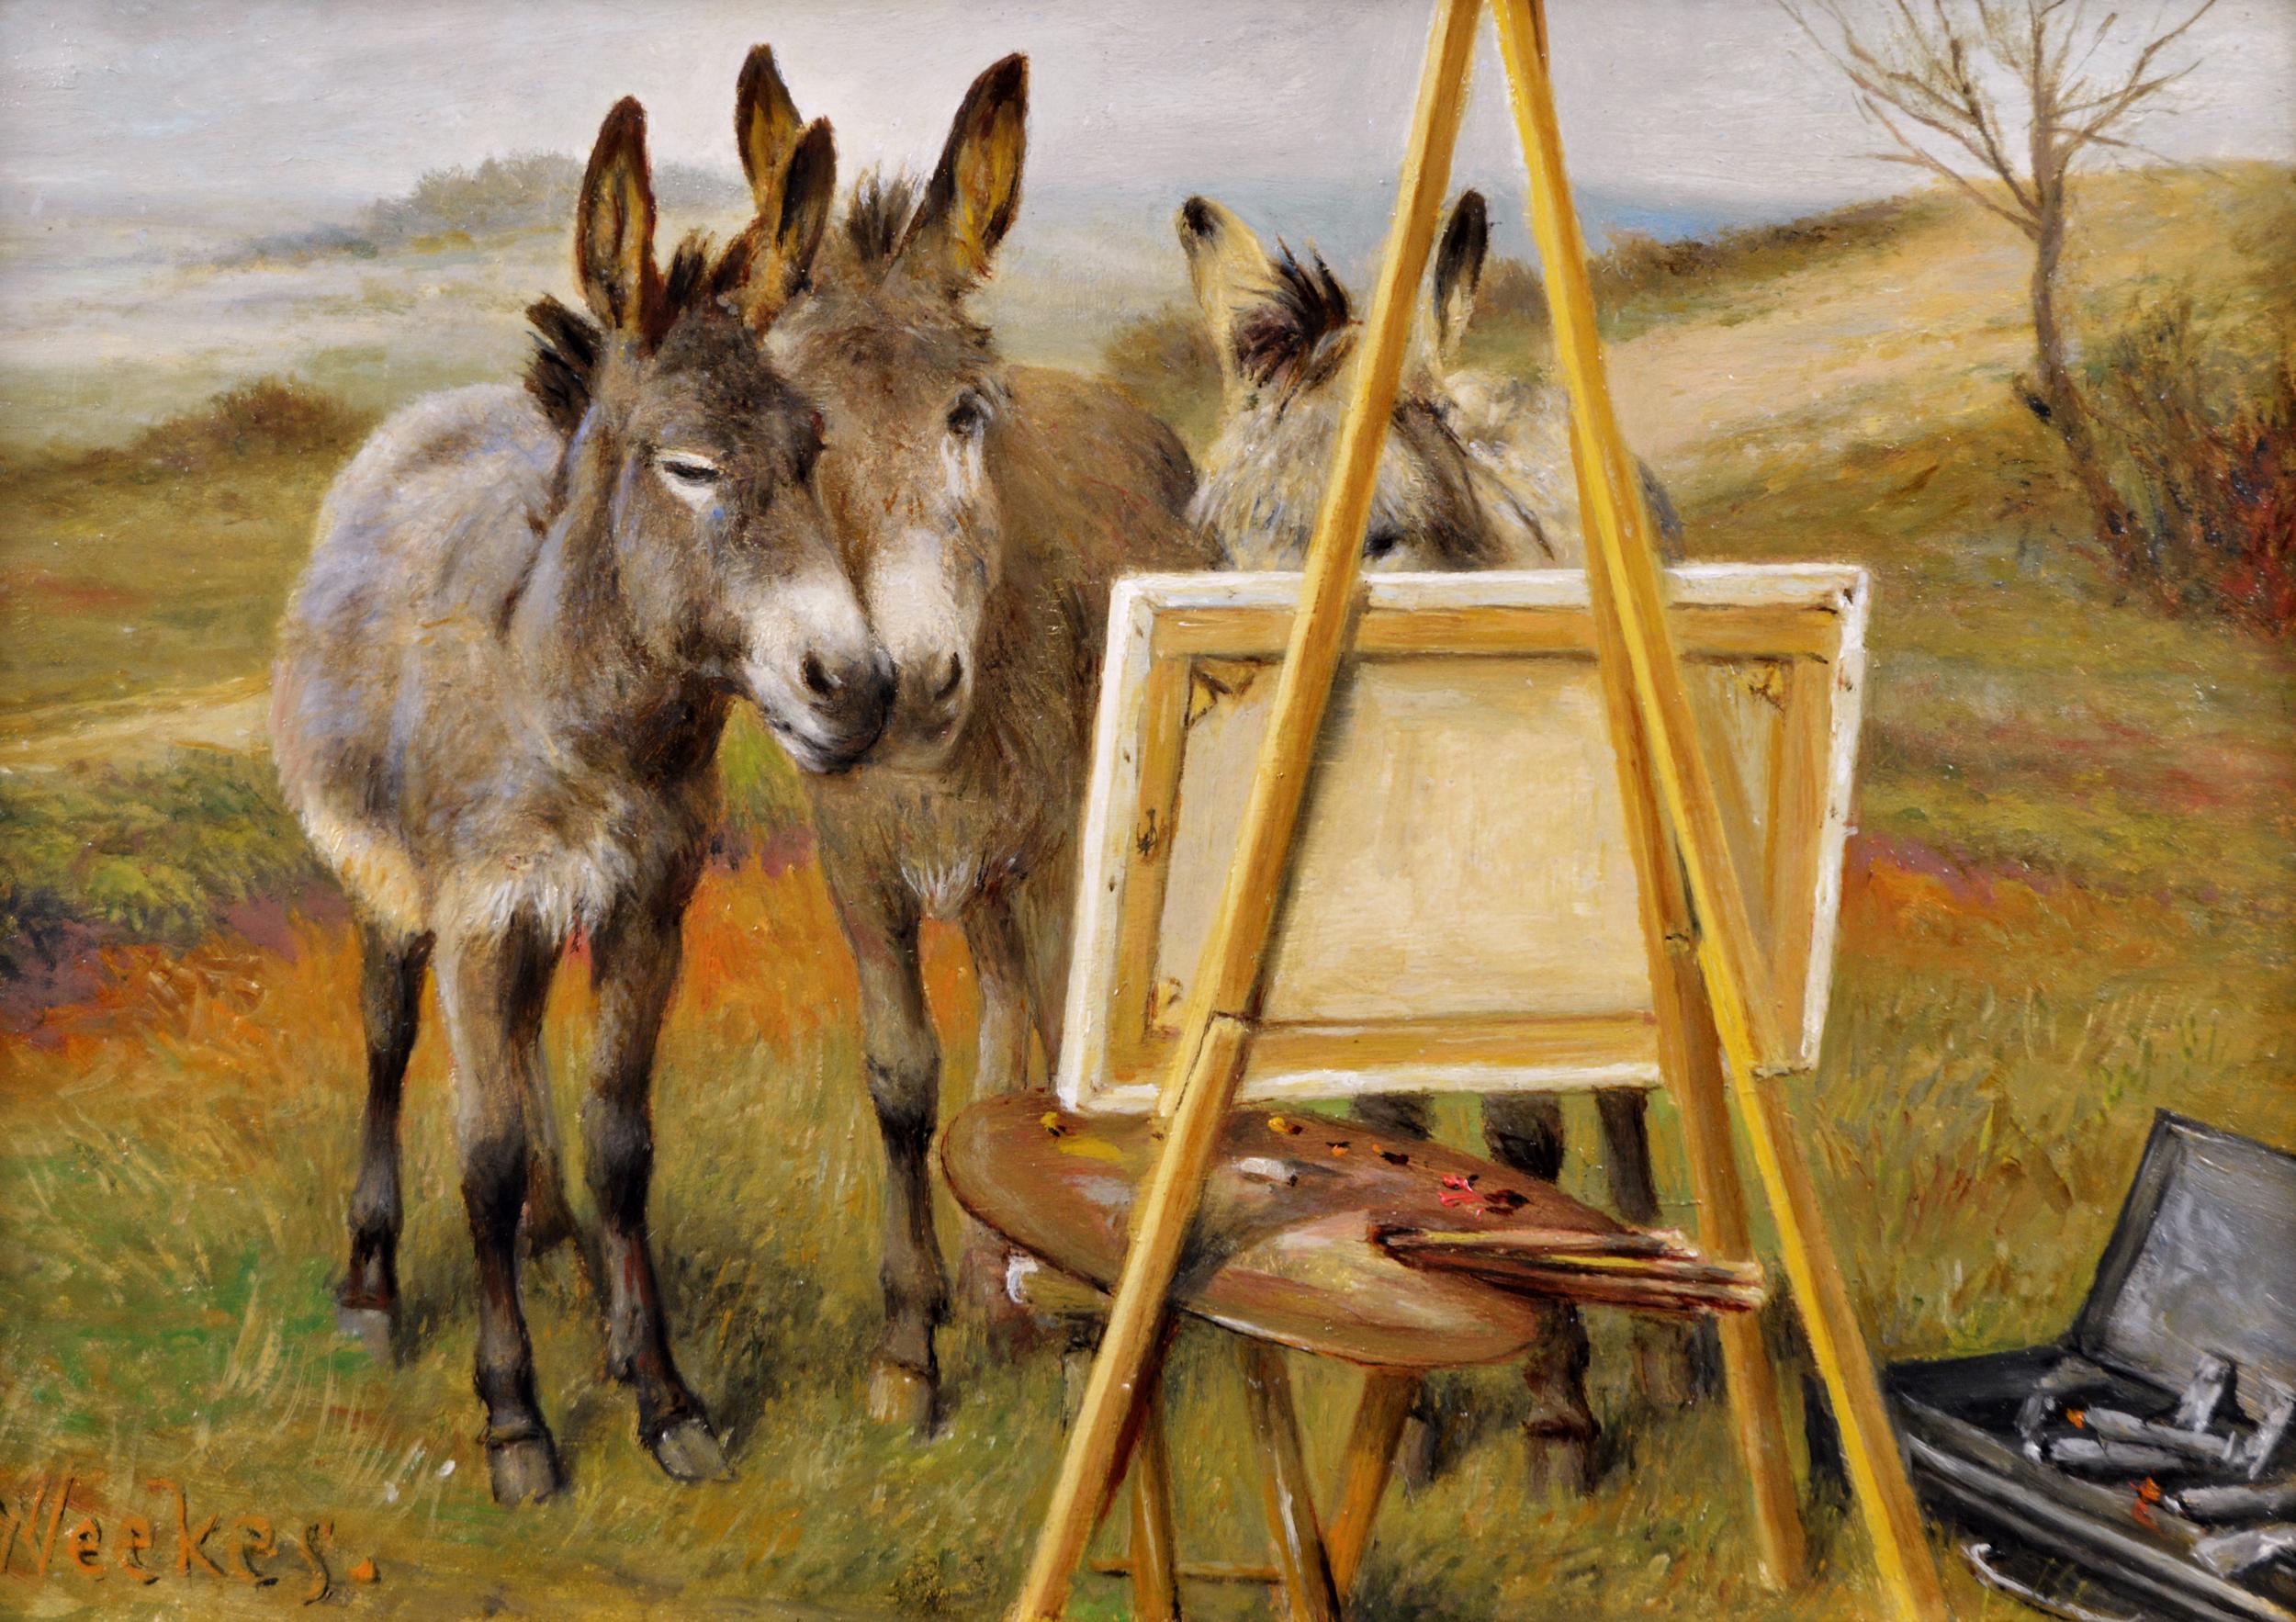 19th Century genre oil painting of donkeys  - Painting by Herbert William Weekes